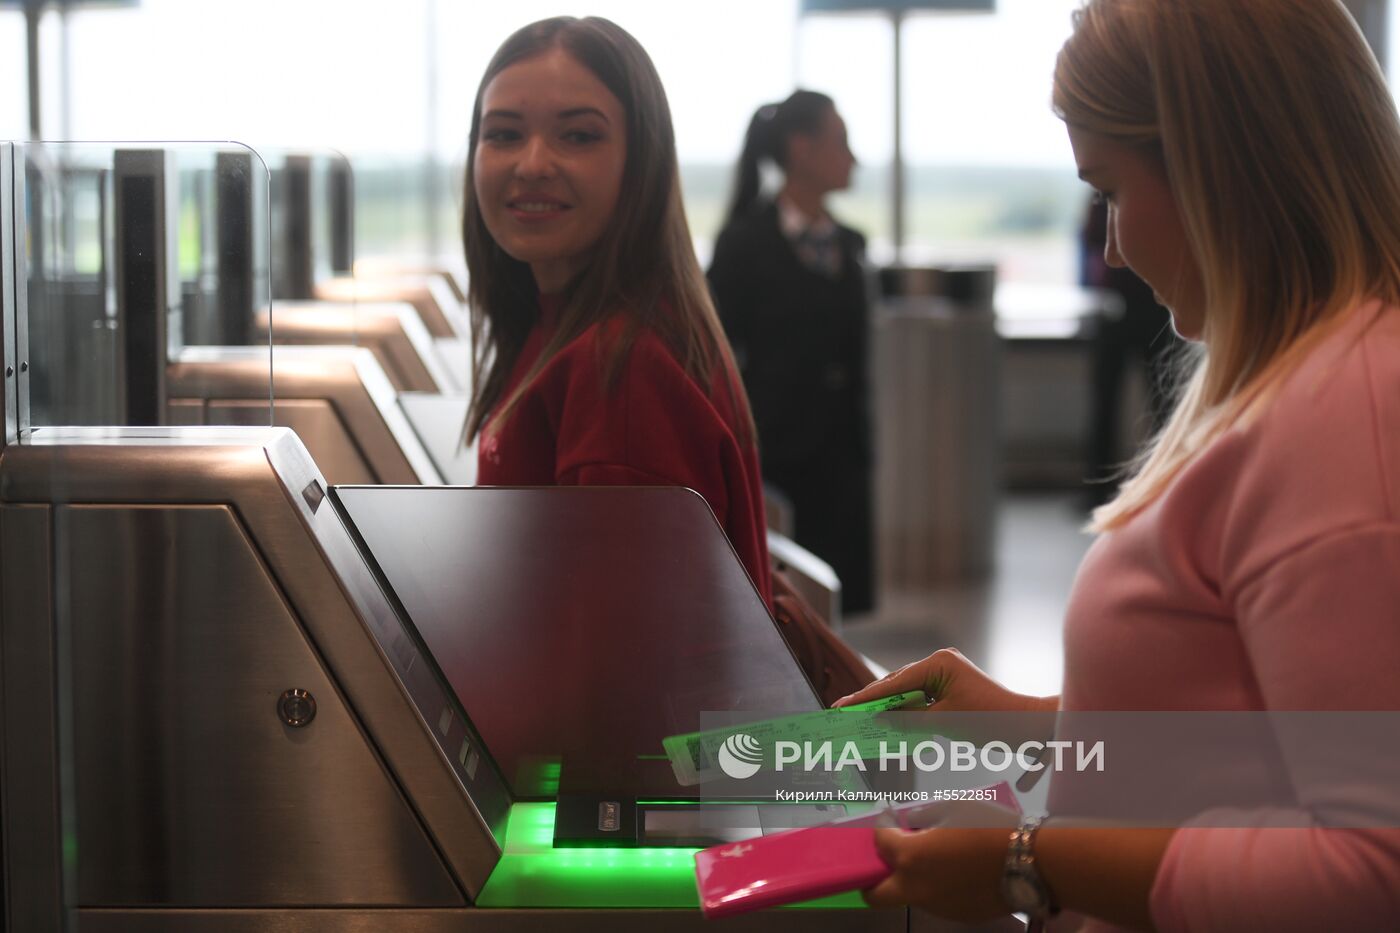 Аэропорт "Домодедово" в преддверии ЧМ-2018  